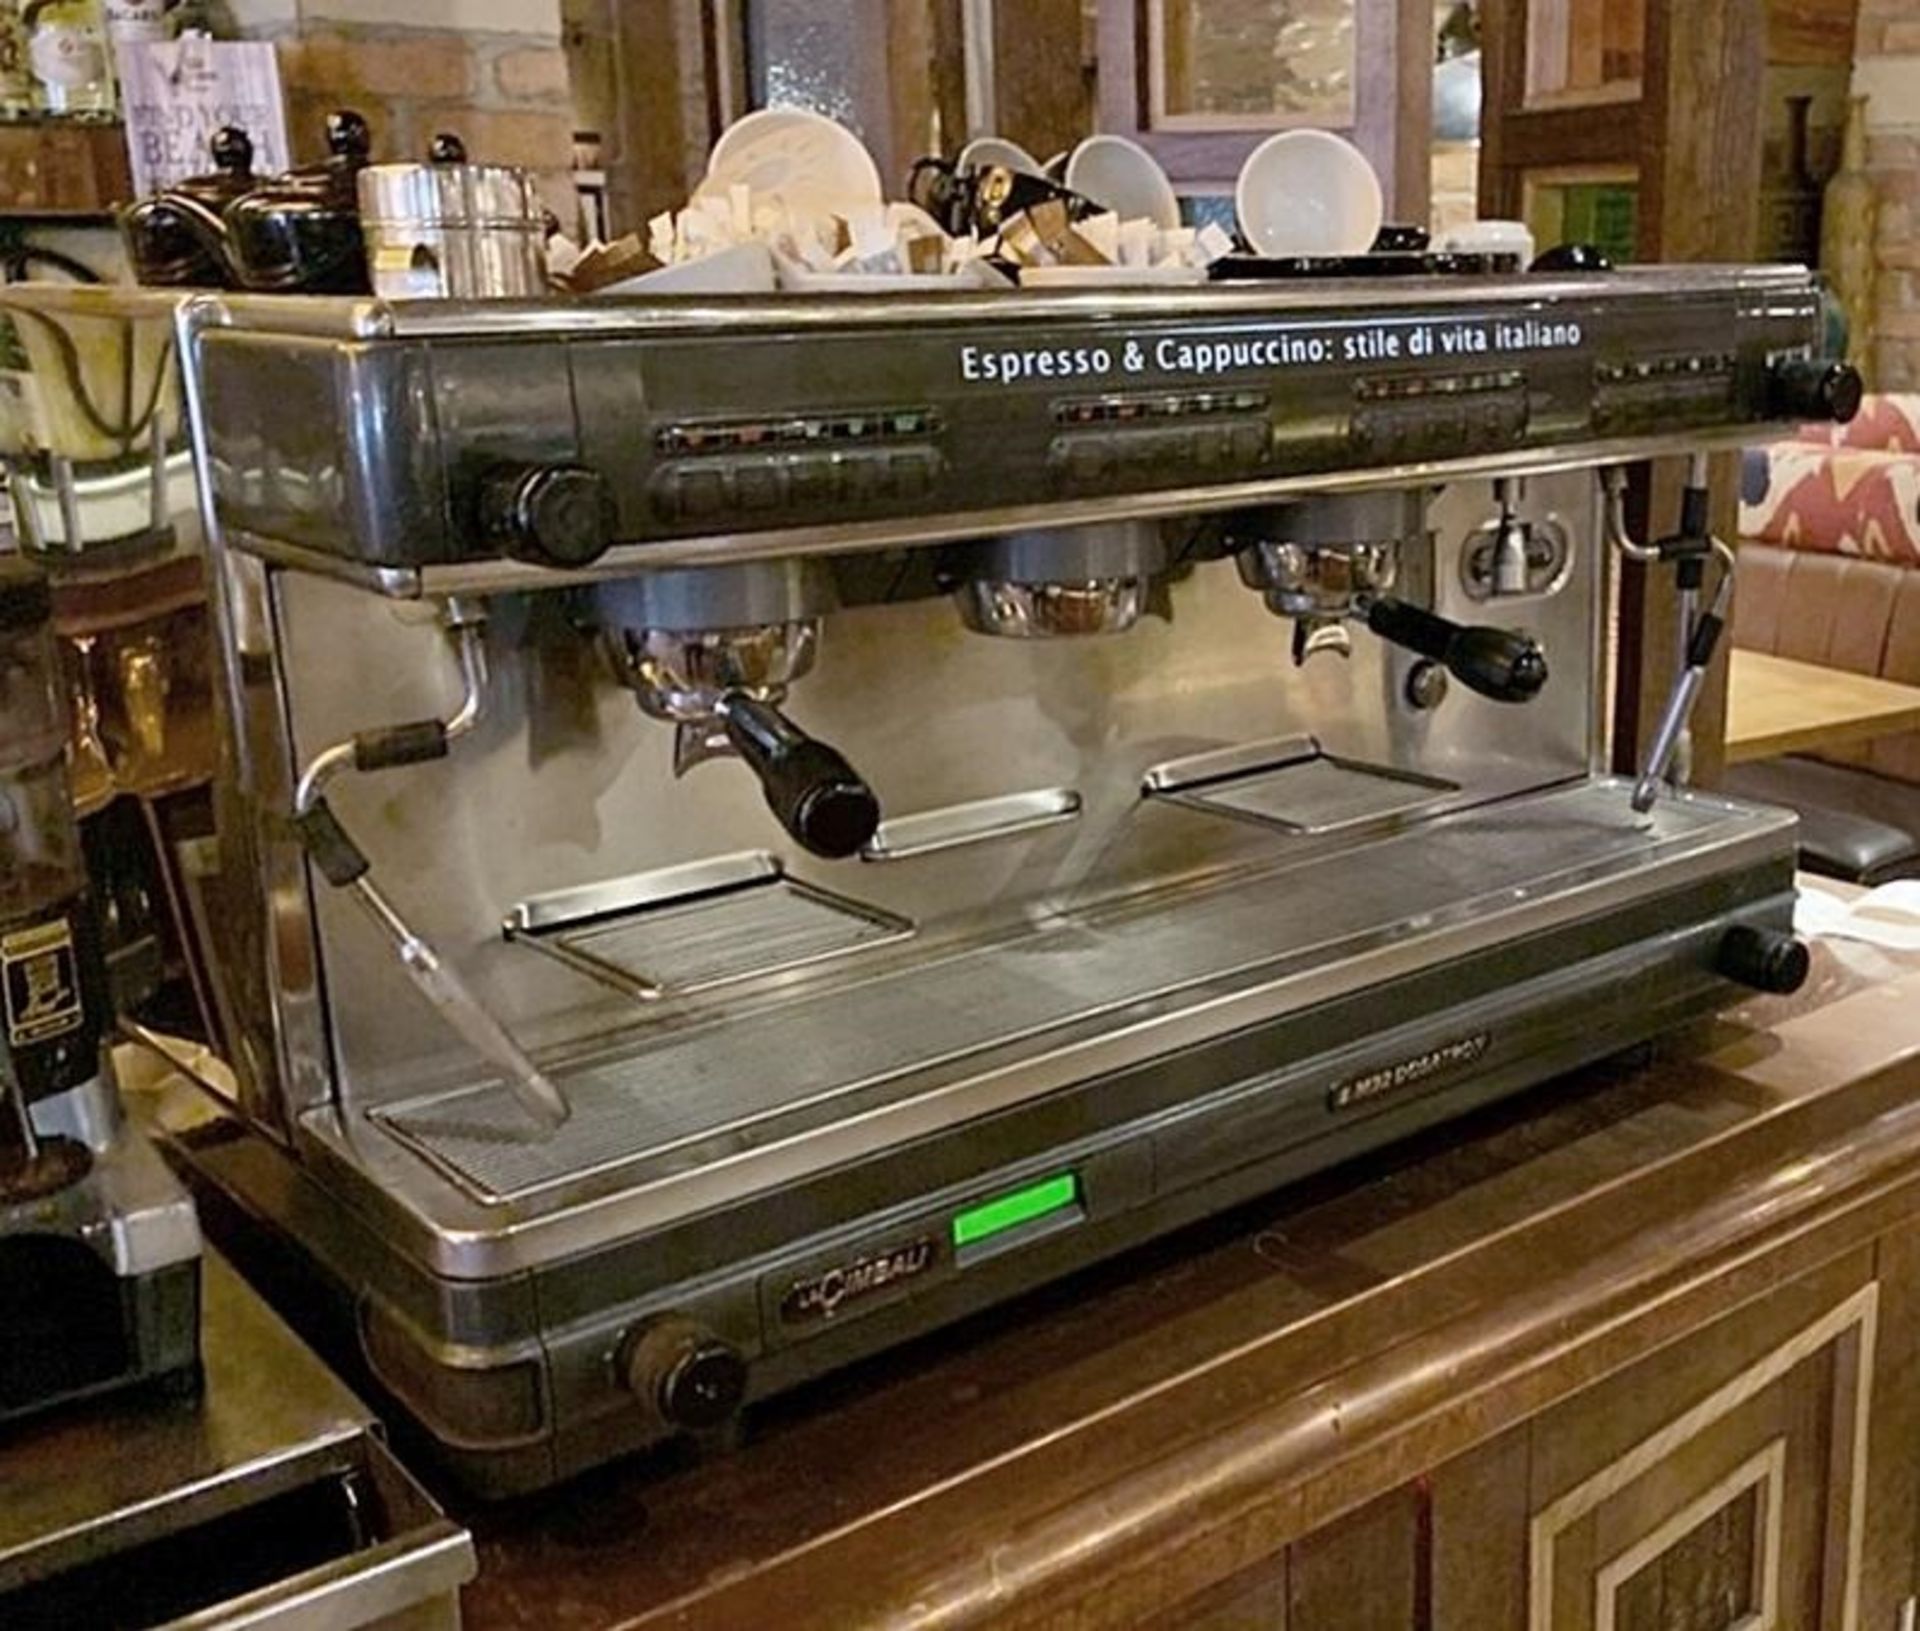 1 x La Cimbalie Espresso & Cappucino 3 Group Coffee Espresso Machine - Model M2 Dosatron - - Image 4 of 4